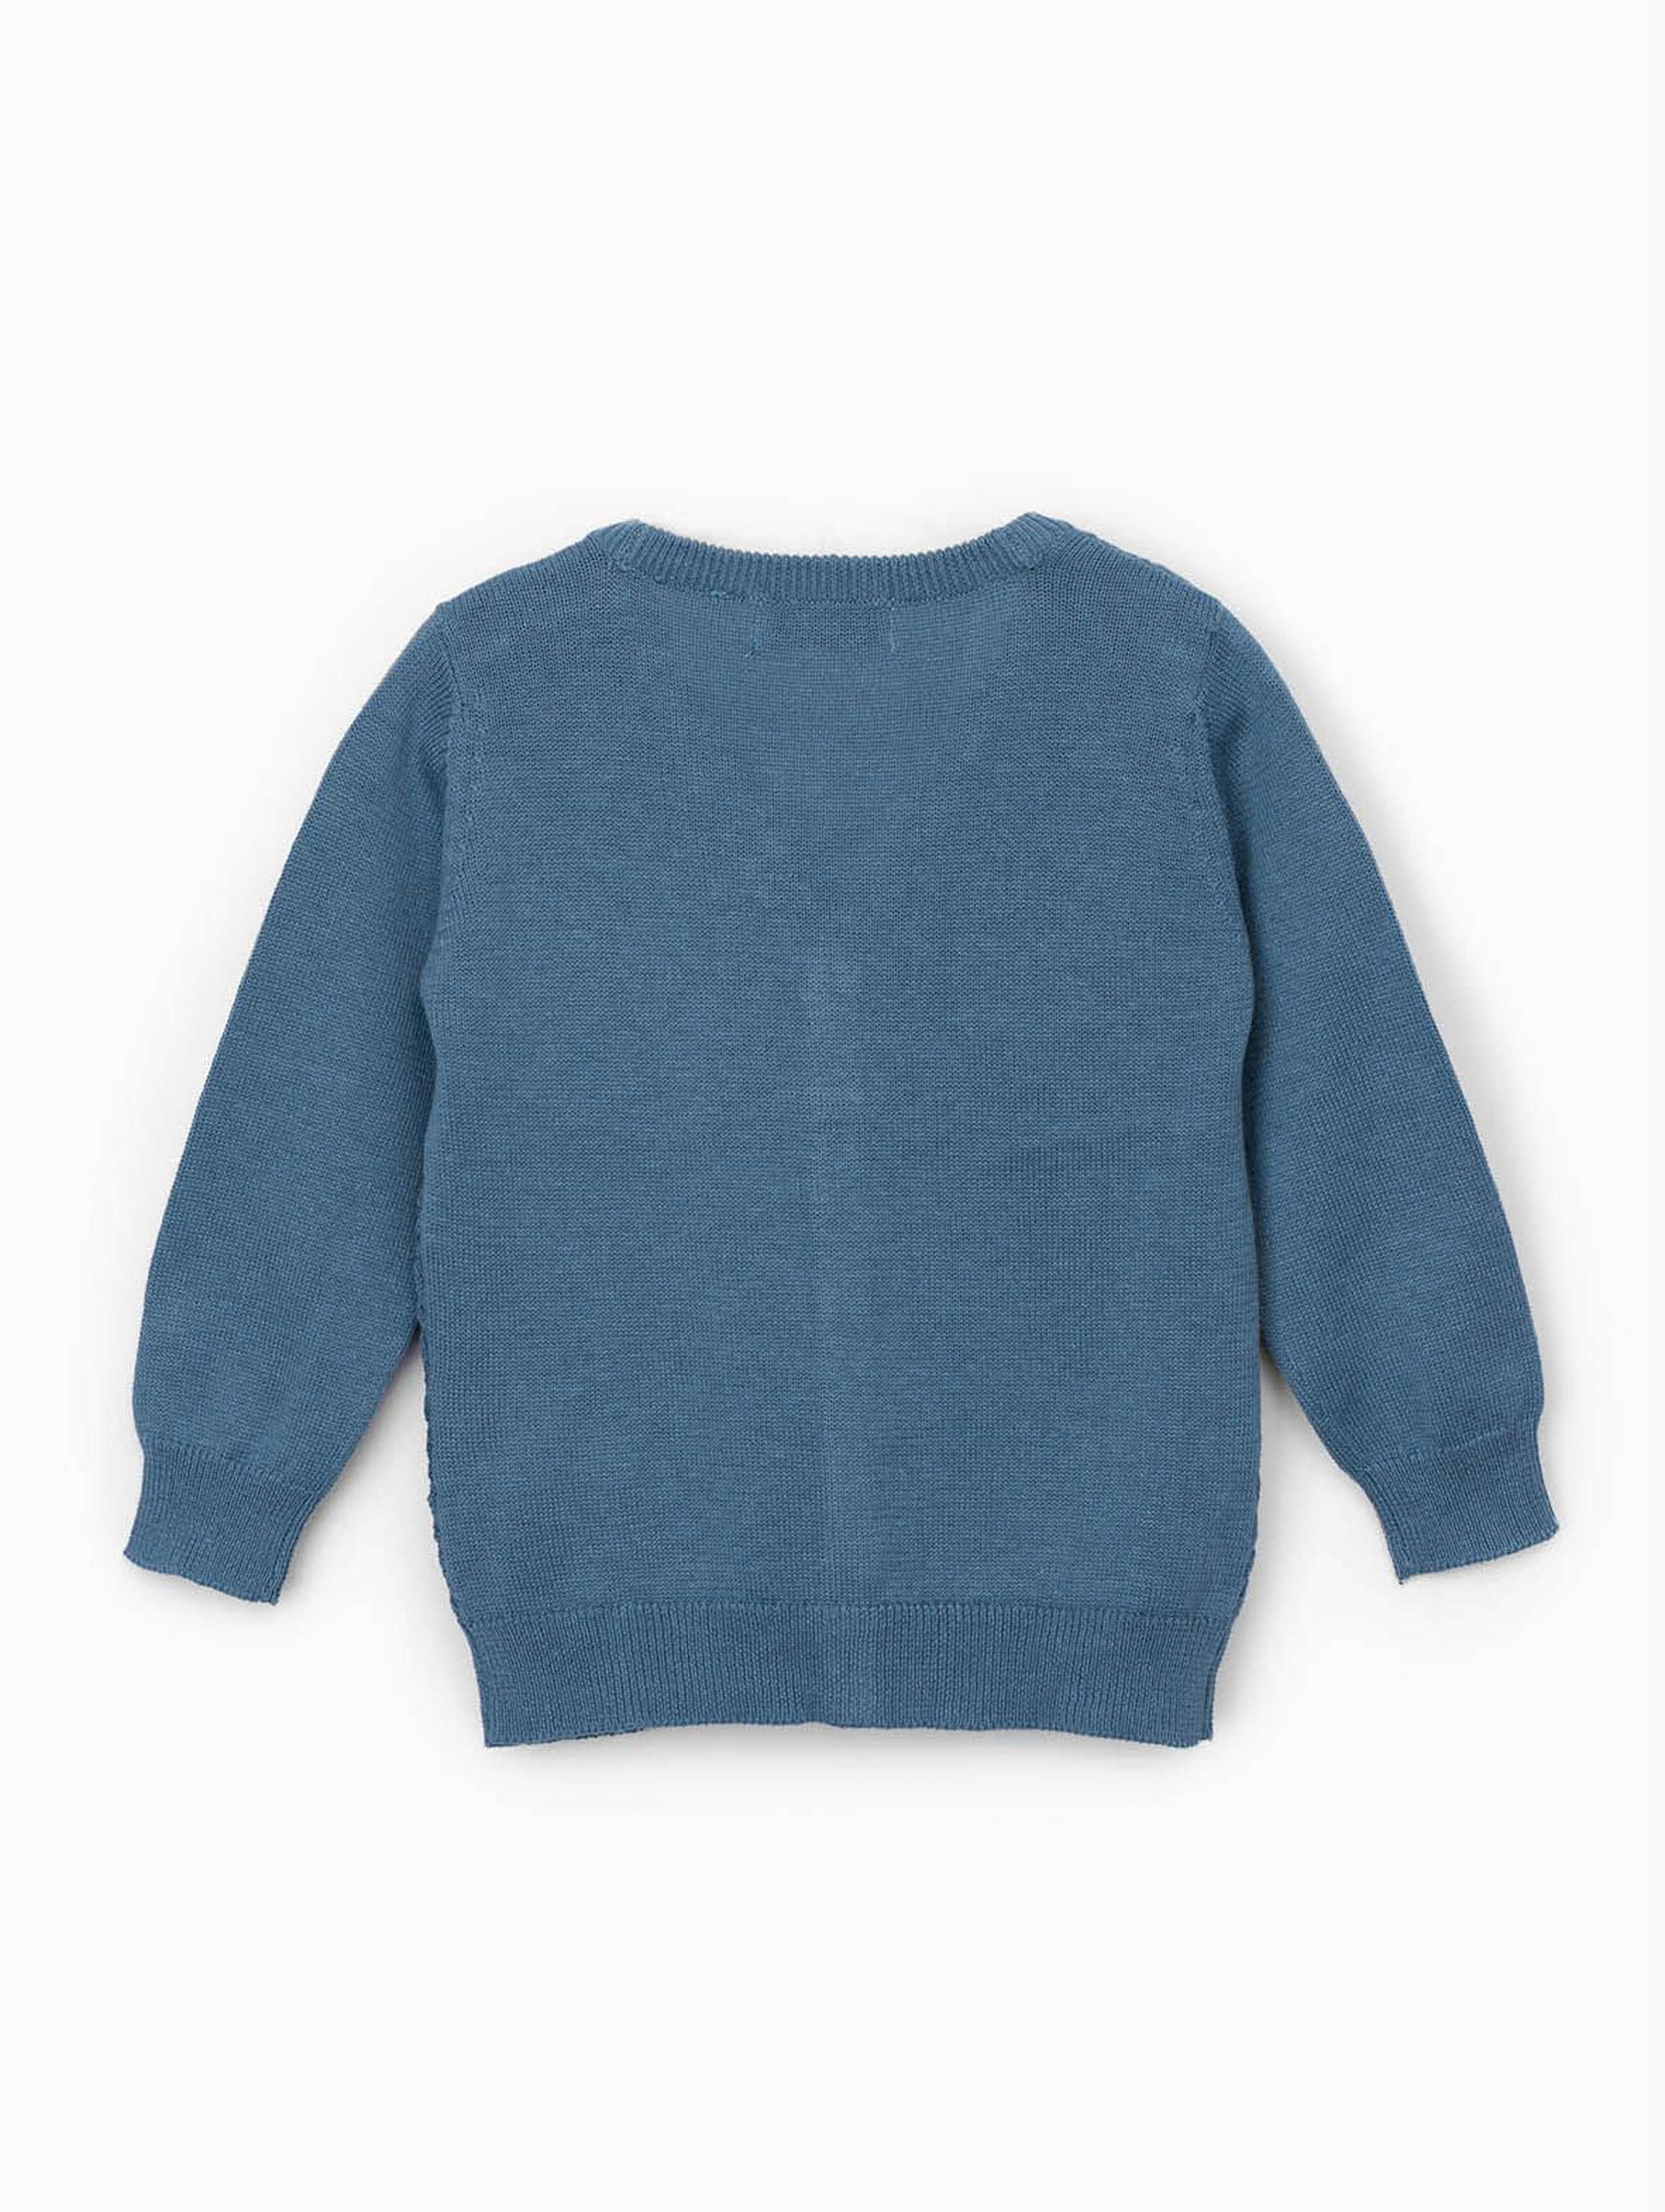 Sweter niemowlęcy rozpinany w kolorze niebieskim